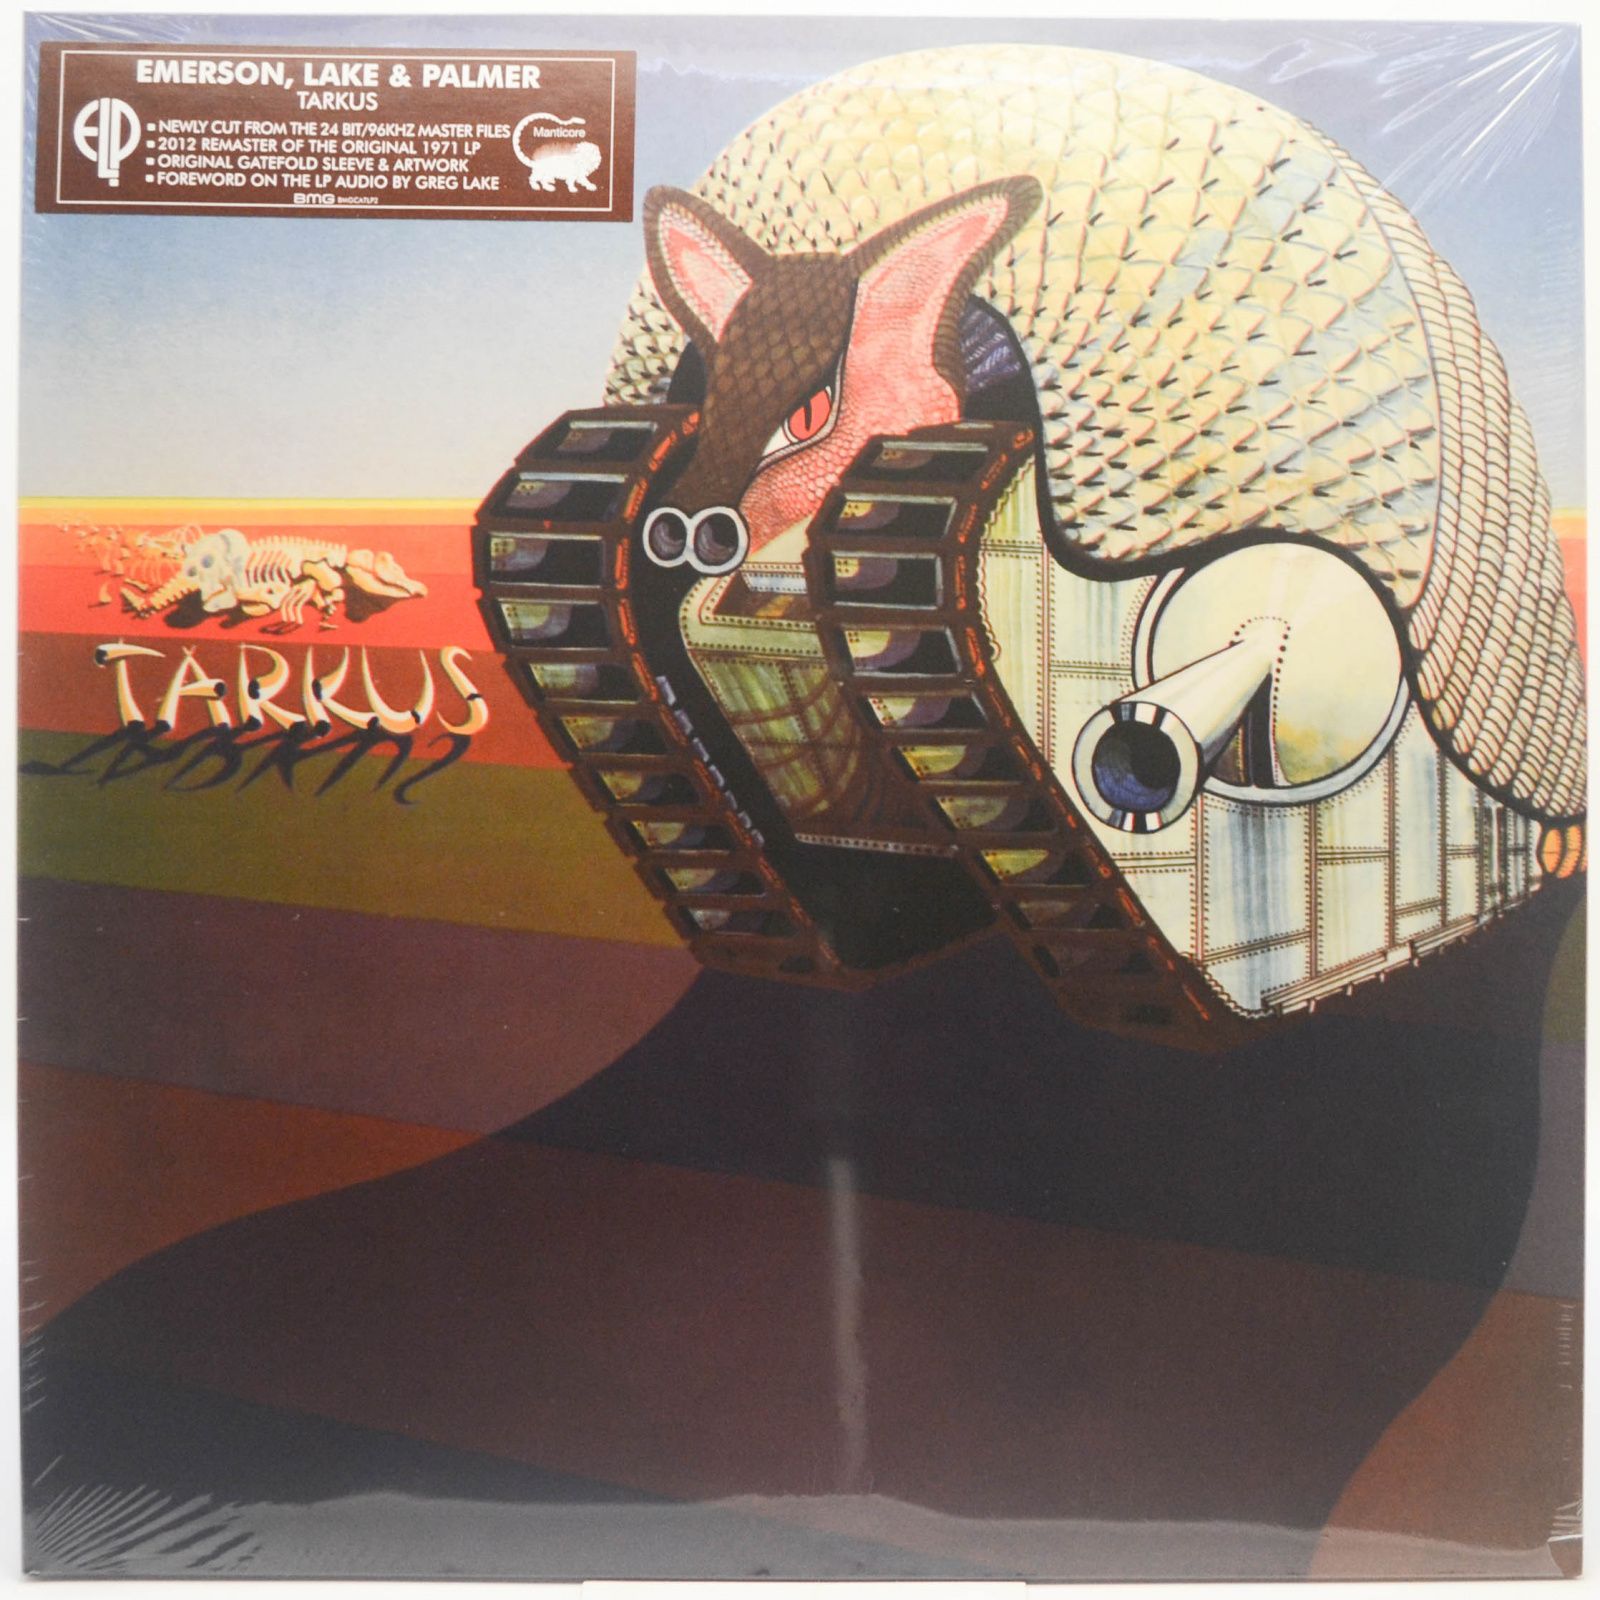 Emerson, Lake & Palmer — Tarkus, 2016